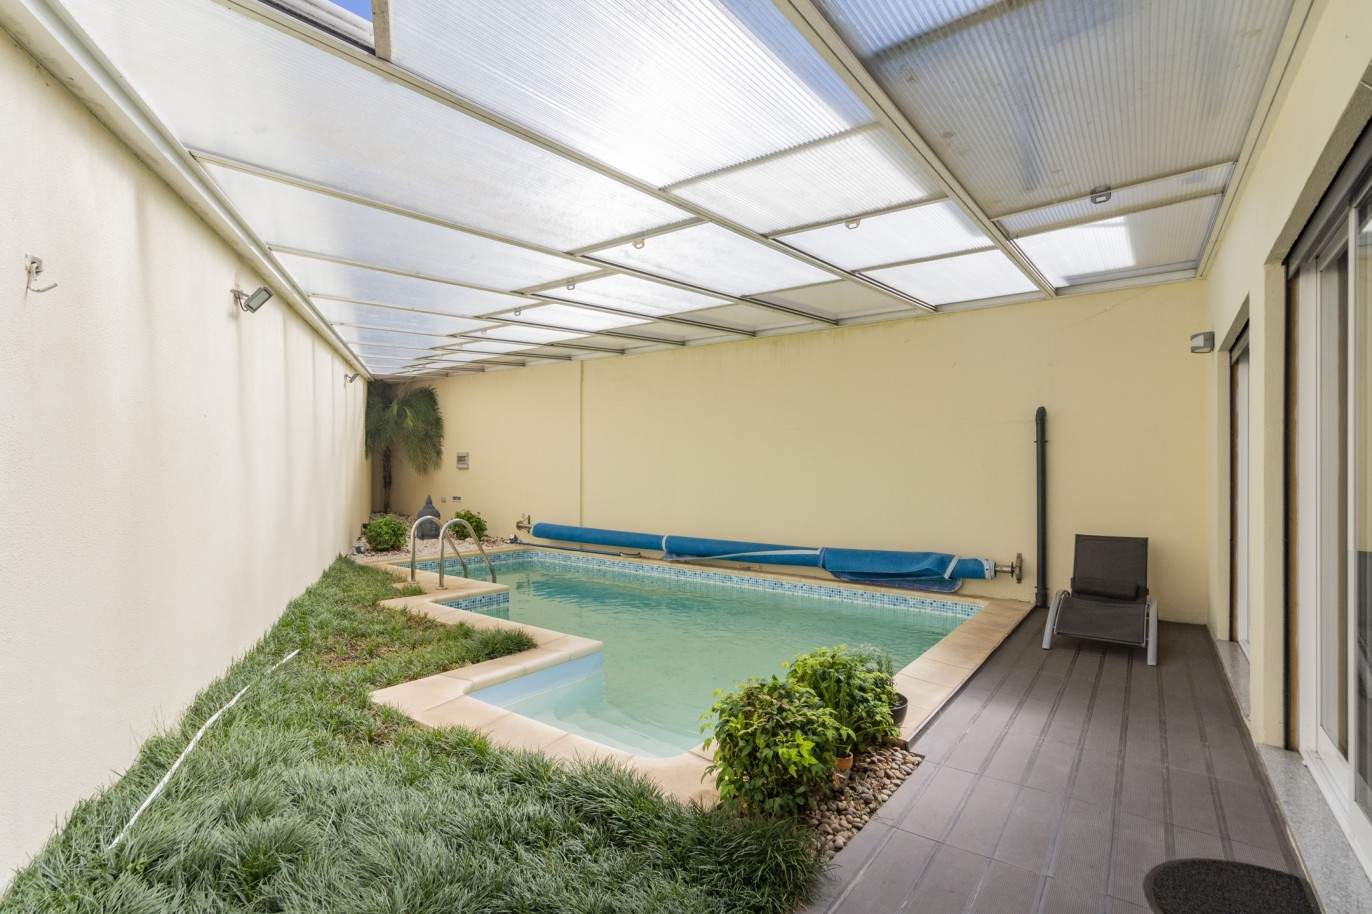 Villa with swimming pool garden, for sale, in Rio Tinto, Gondomar, Porto, Portugal_207851